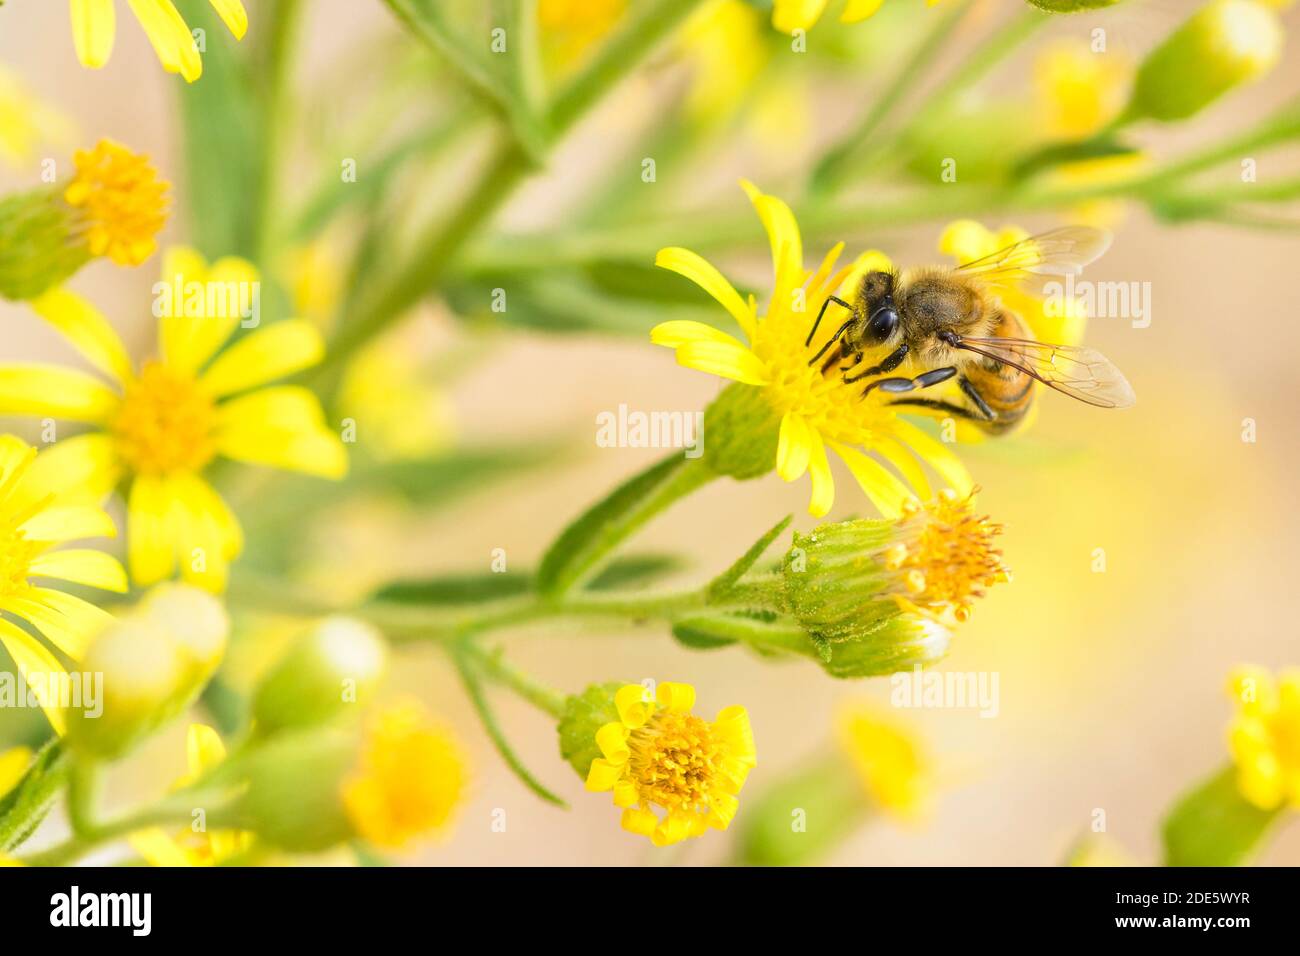 Abeille syrienne (apis mellifera syriaca) sur une fleur sauvage jaune Banque D'Images